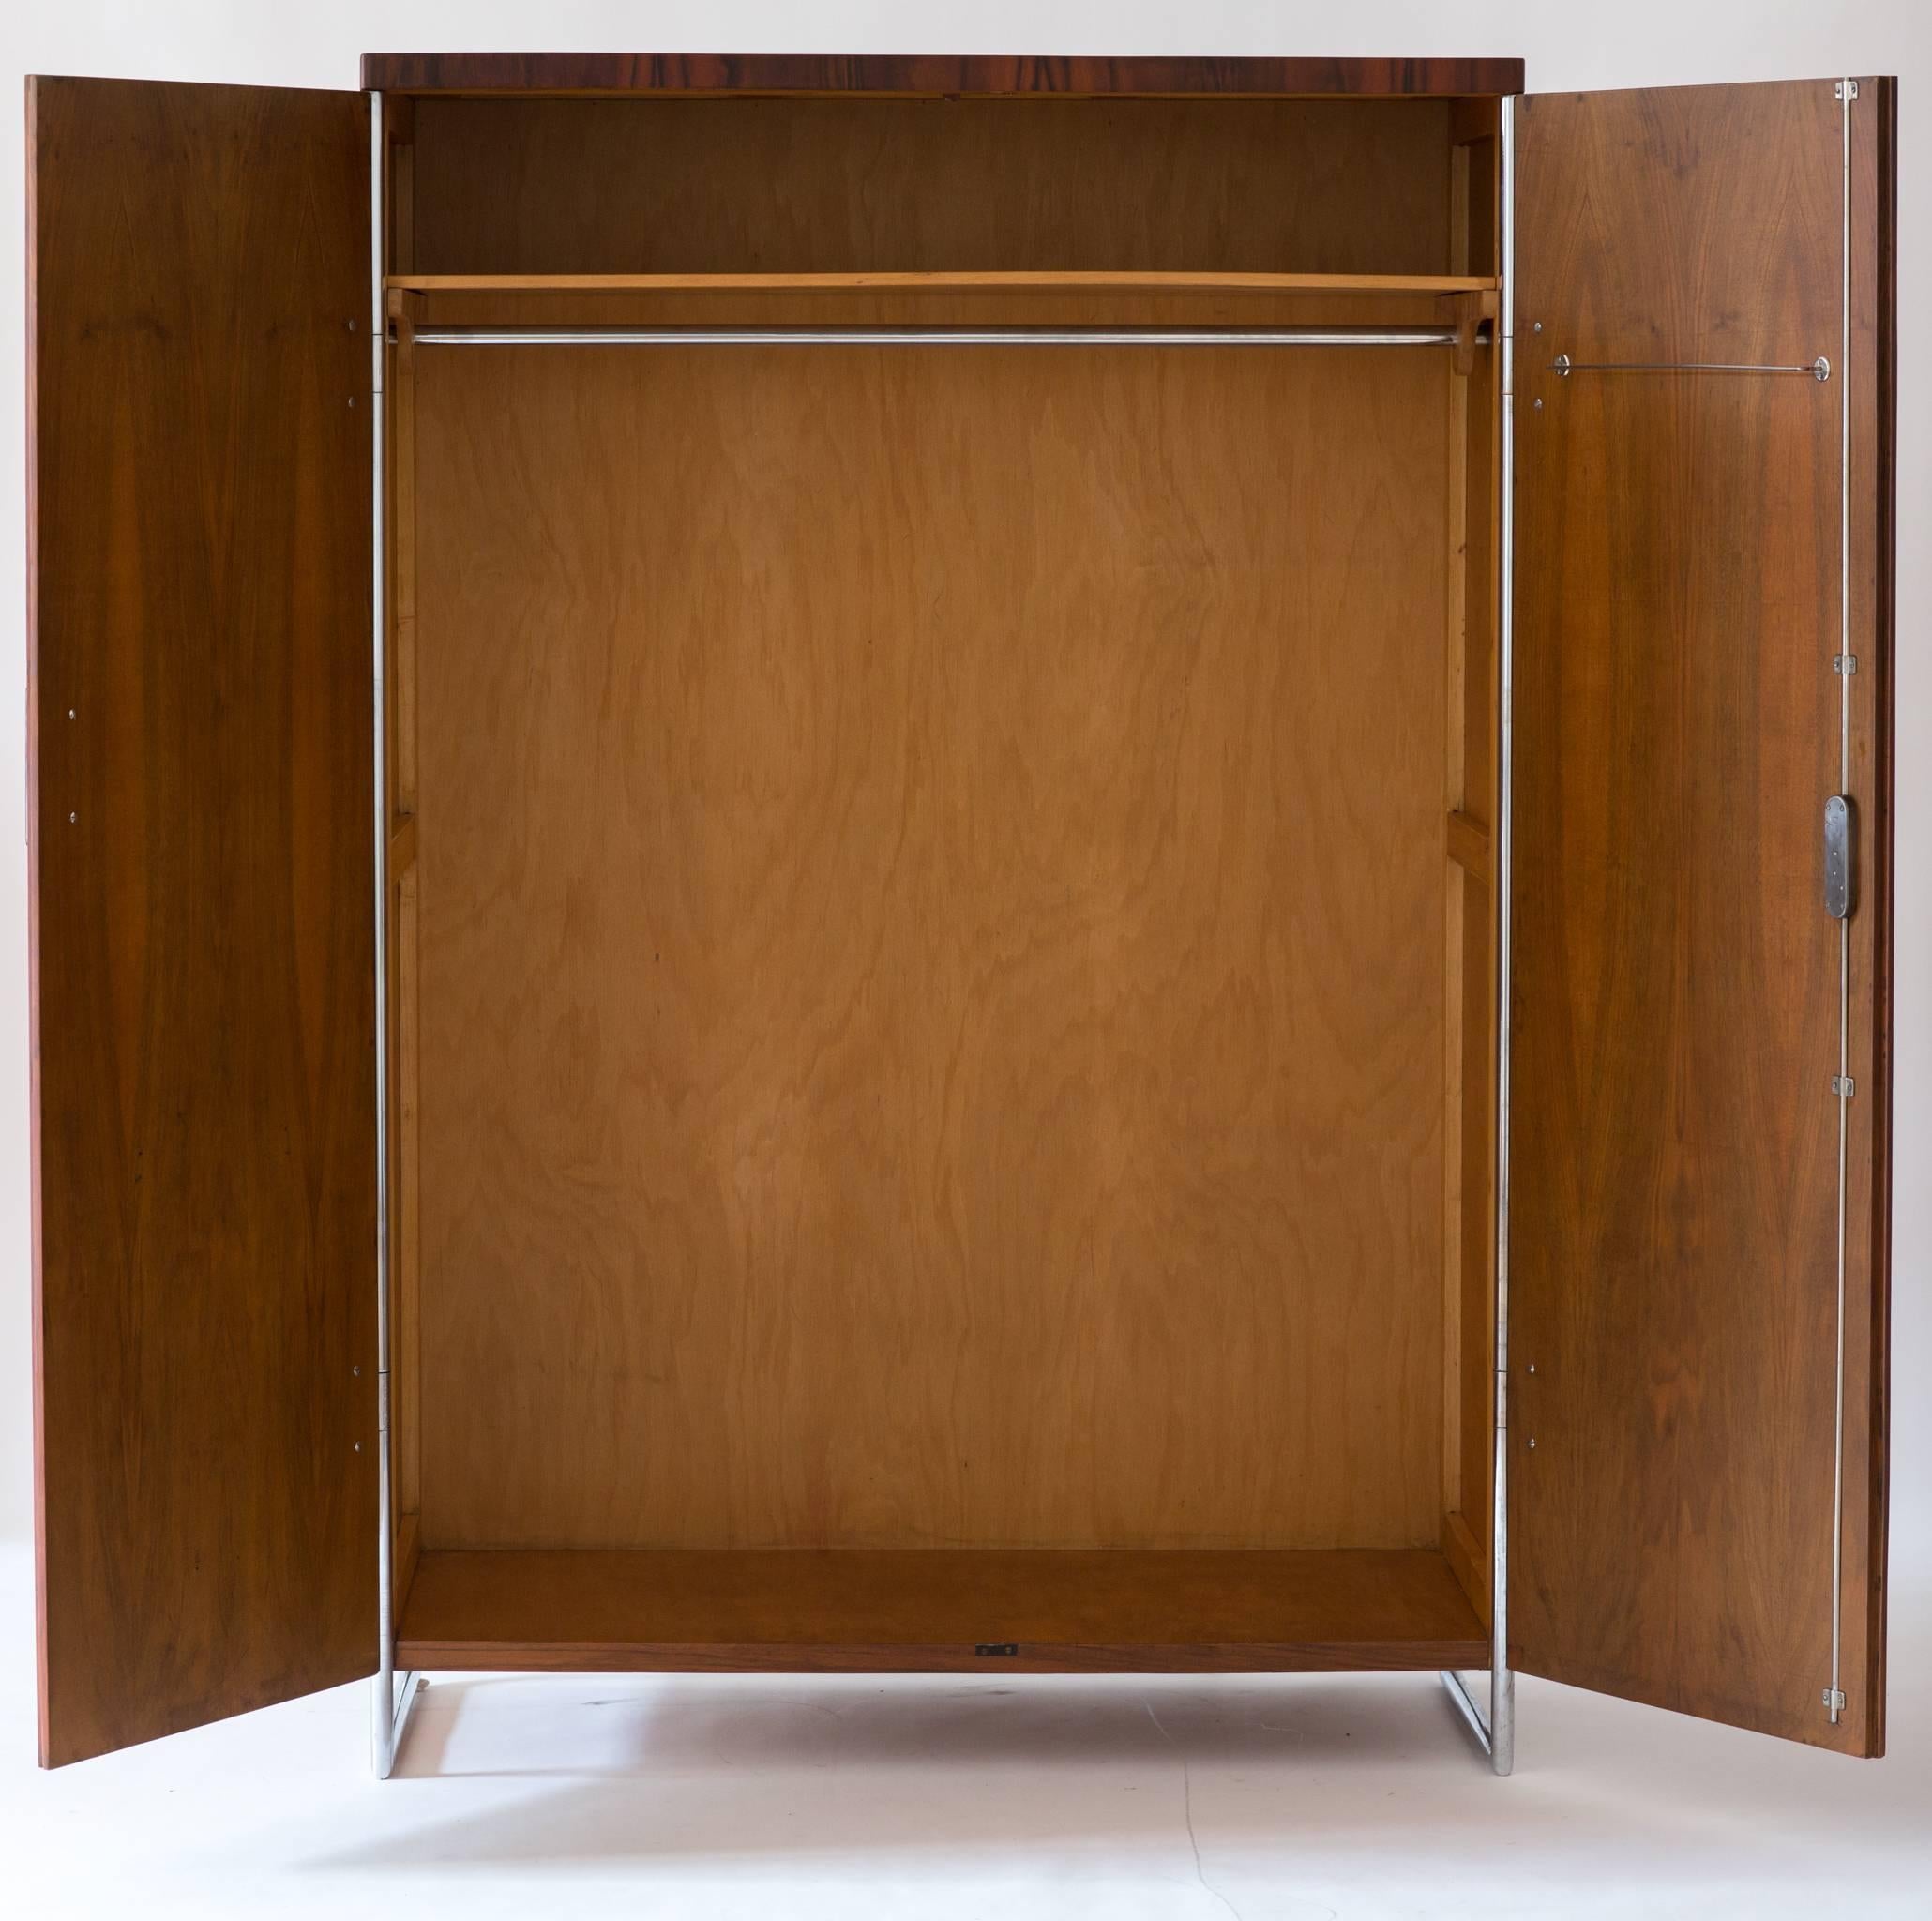 Czech Vintage Midcentury Bauhaus Wardrobe Cupboard Designed by Hagemann, circa 1930 For Sale